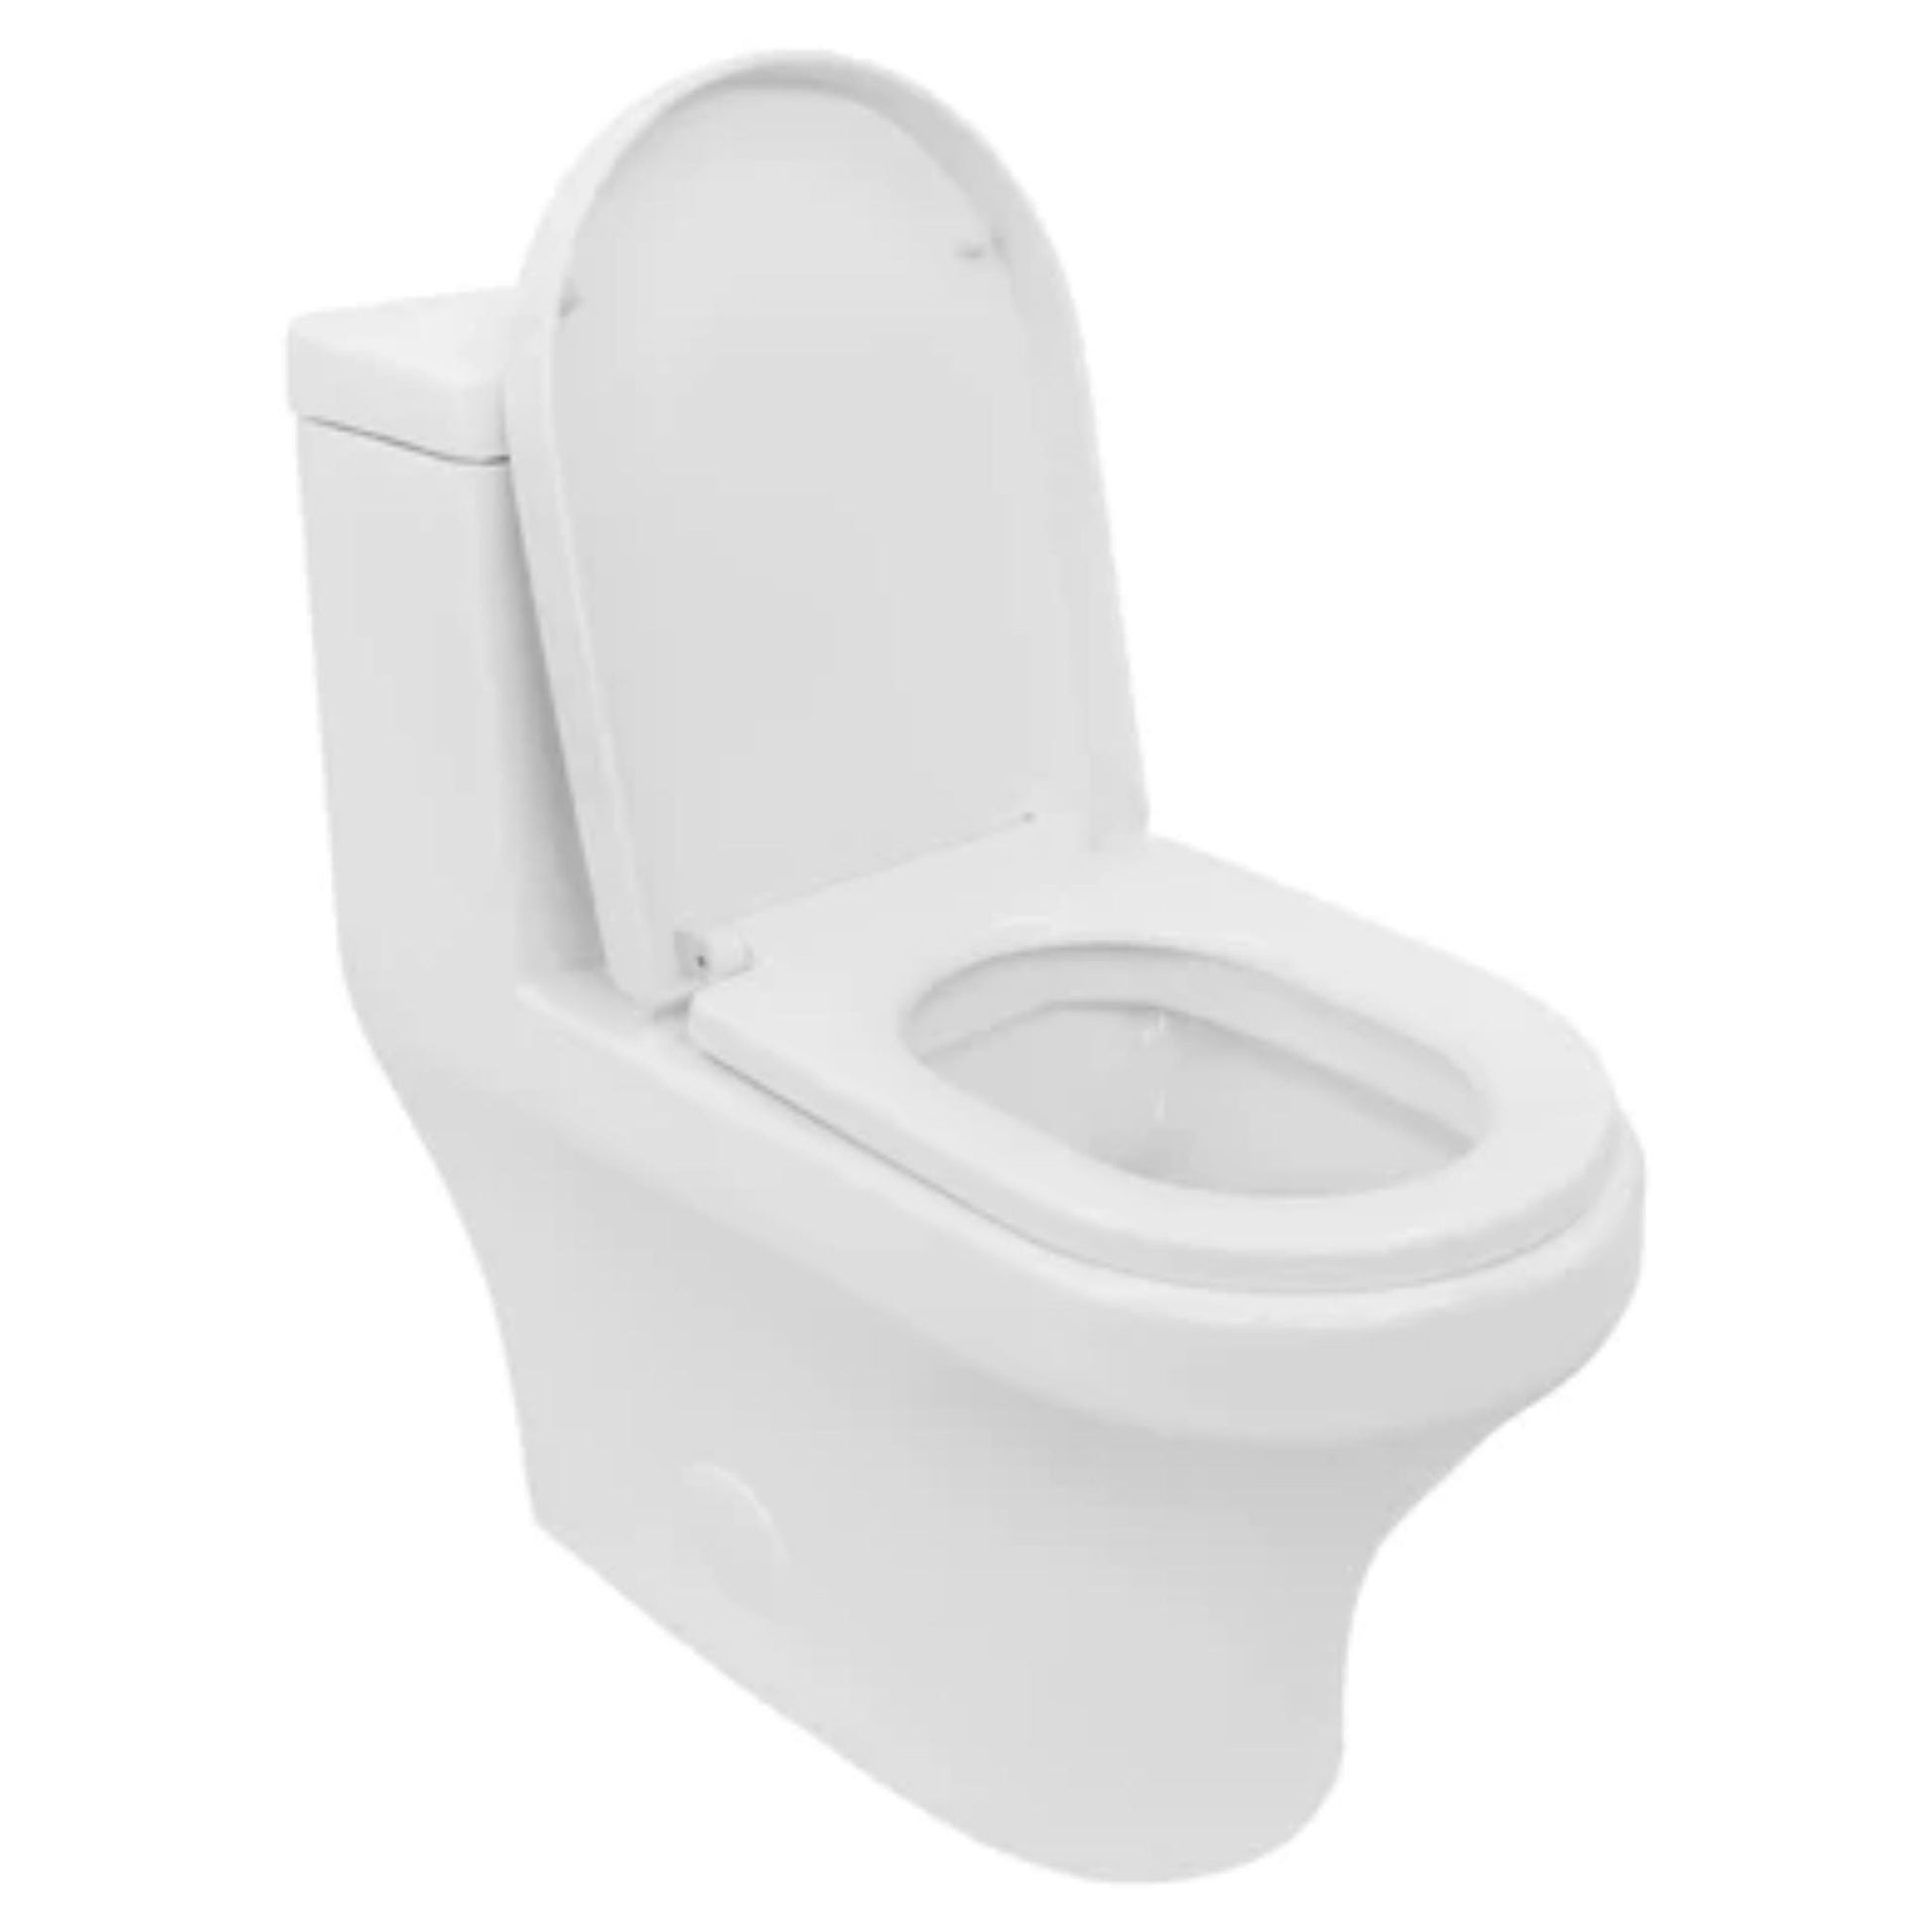 LessCare Dual Flush One Piece Modern Toilet - LT8